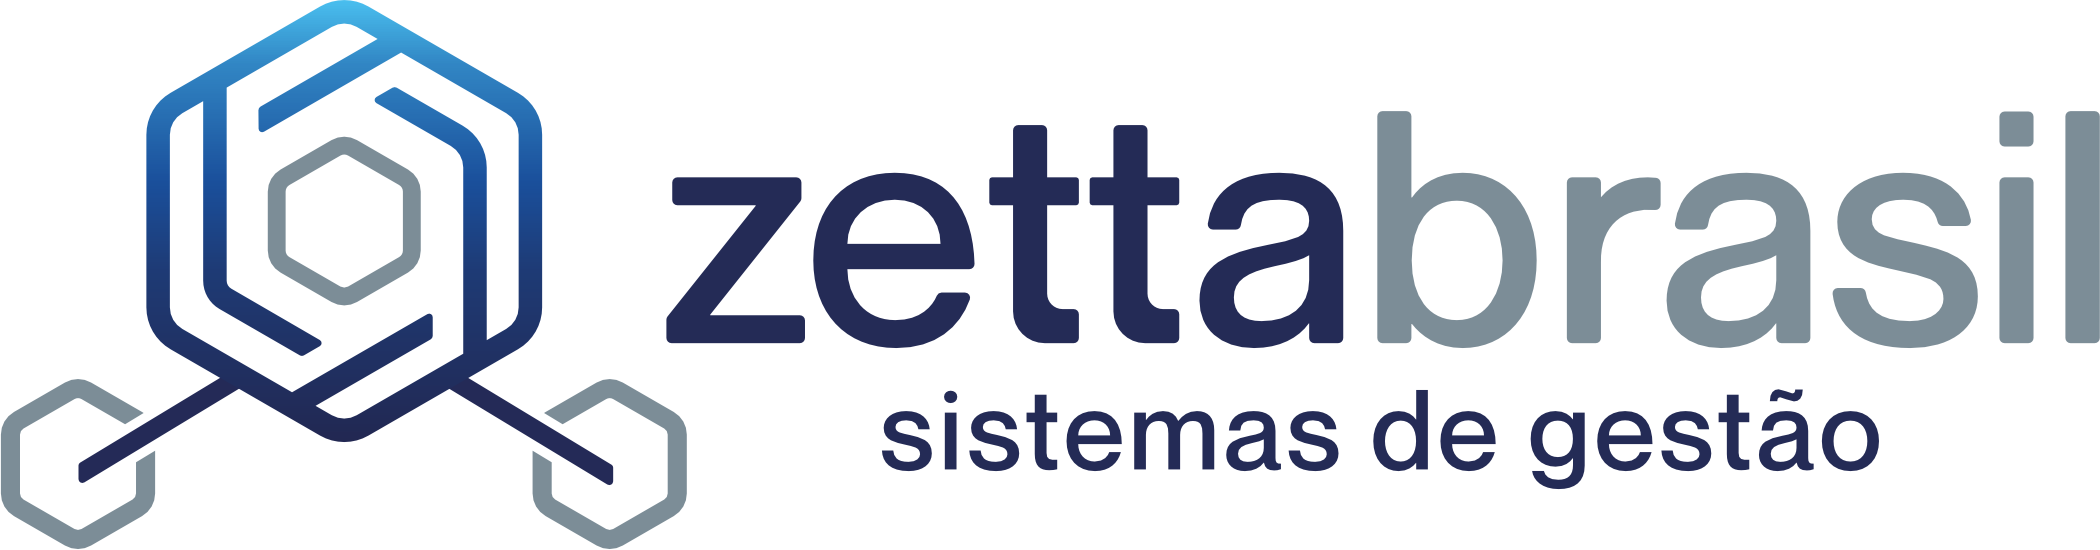 Brand ZettaBrasil Management Systems